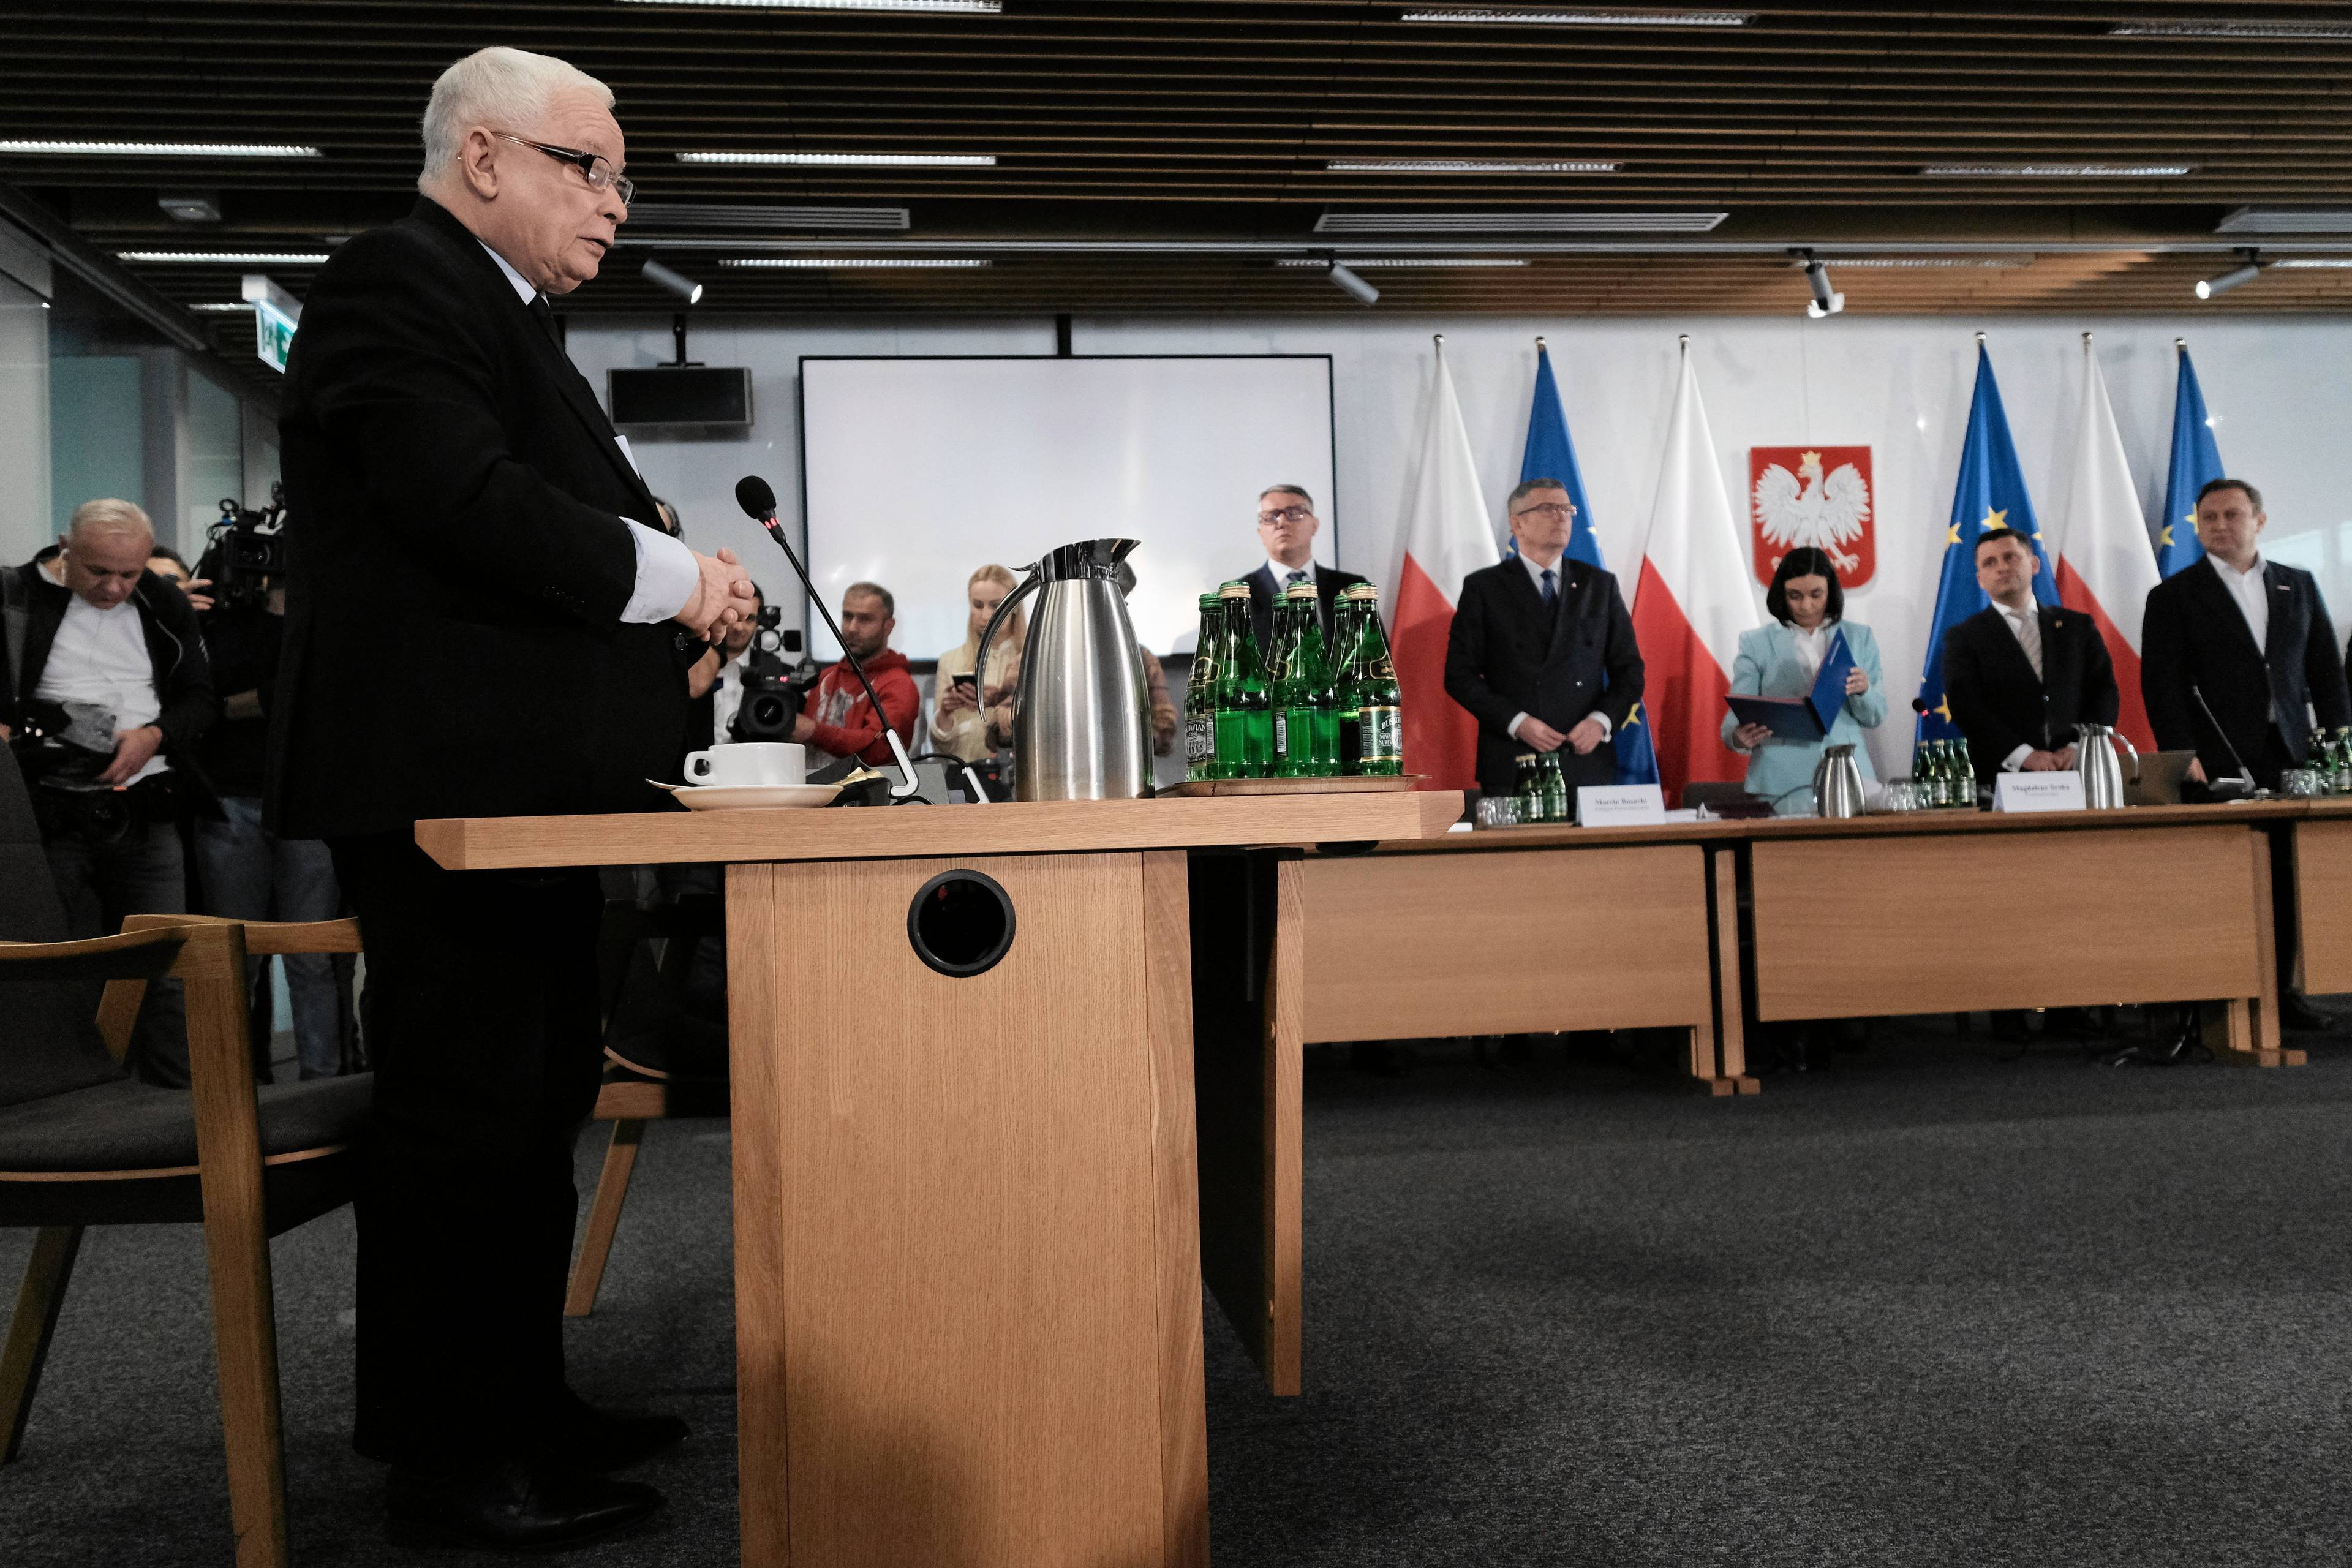 Jarosław Kaczyński stoi przy mikrofonie, za nim członkowie komisji śledczej